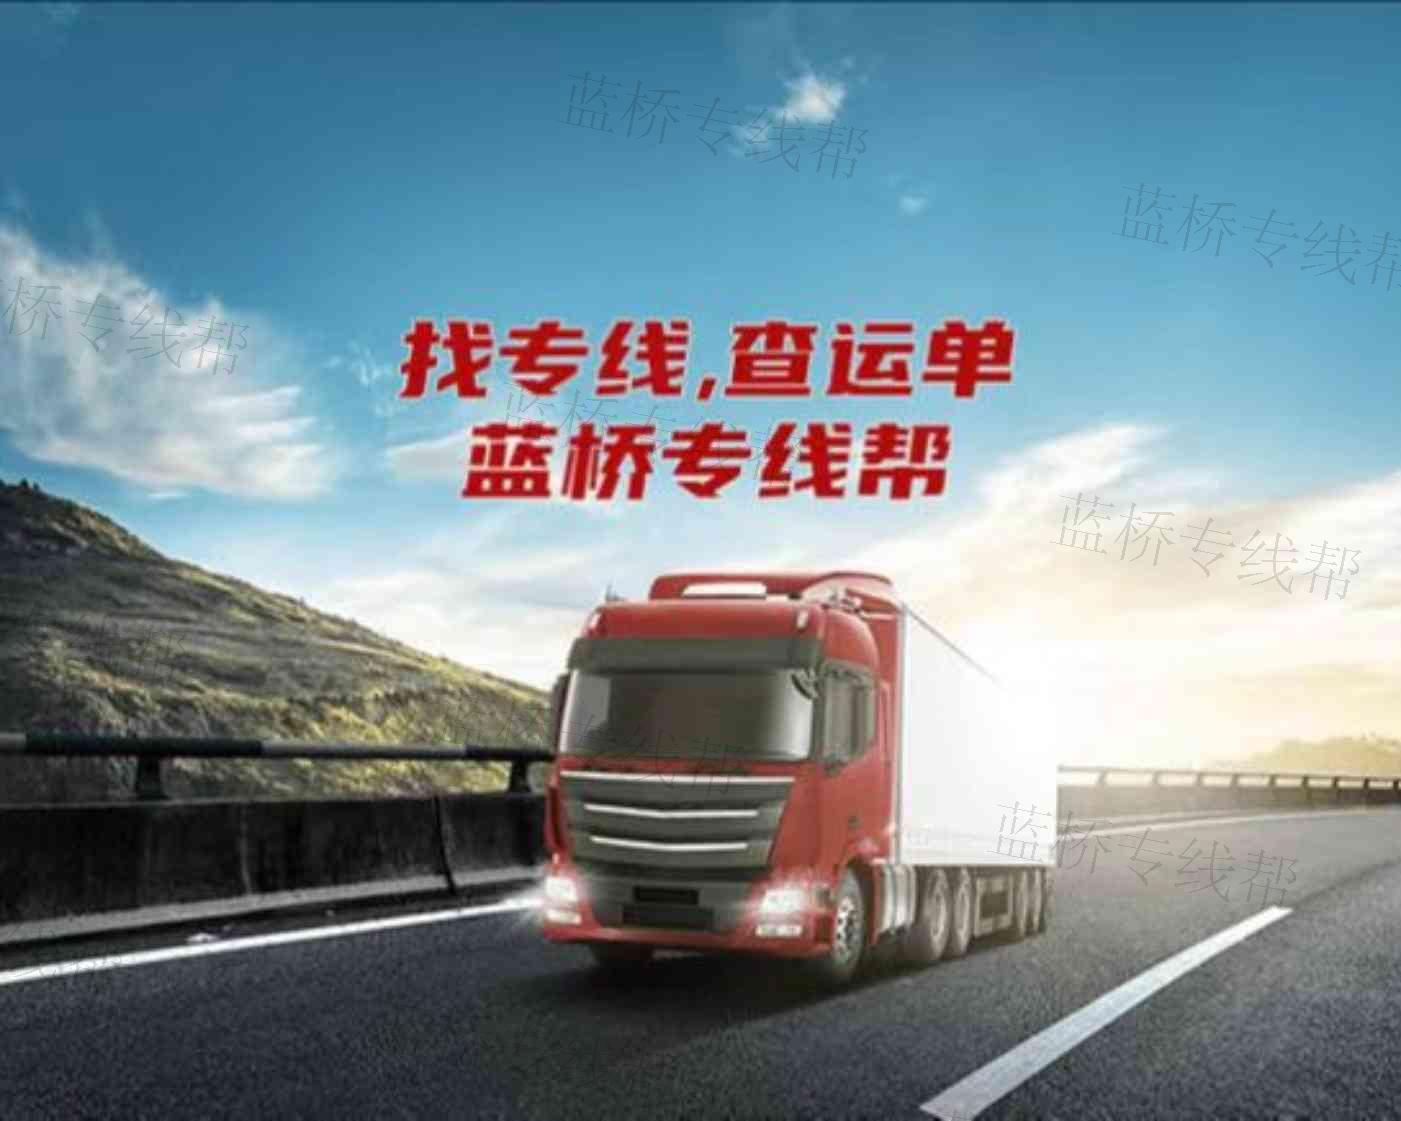 北京祥云速达物流有限公司